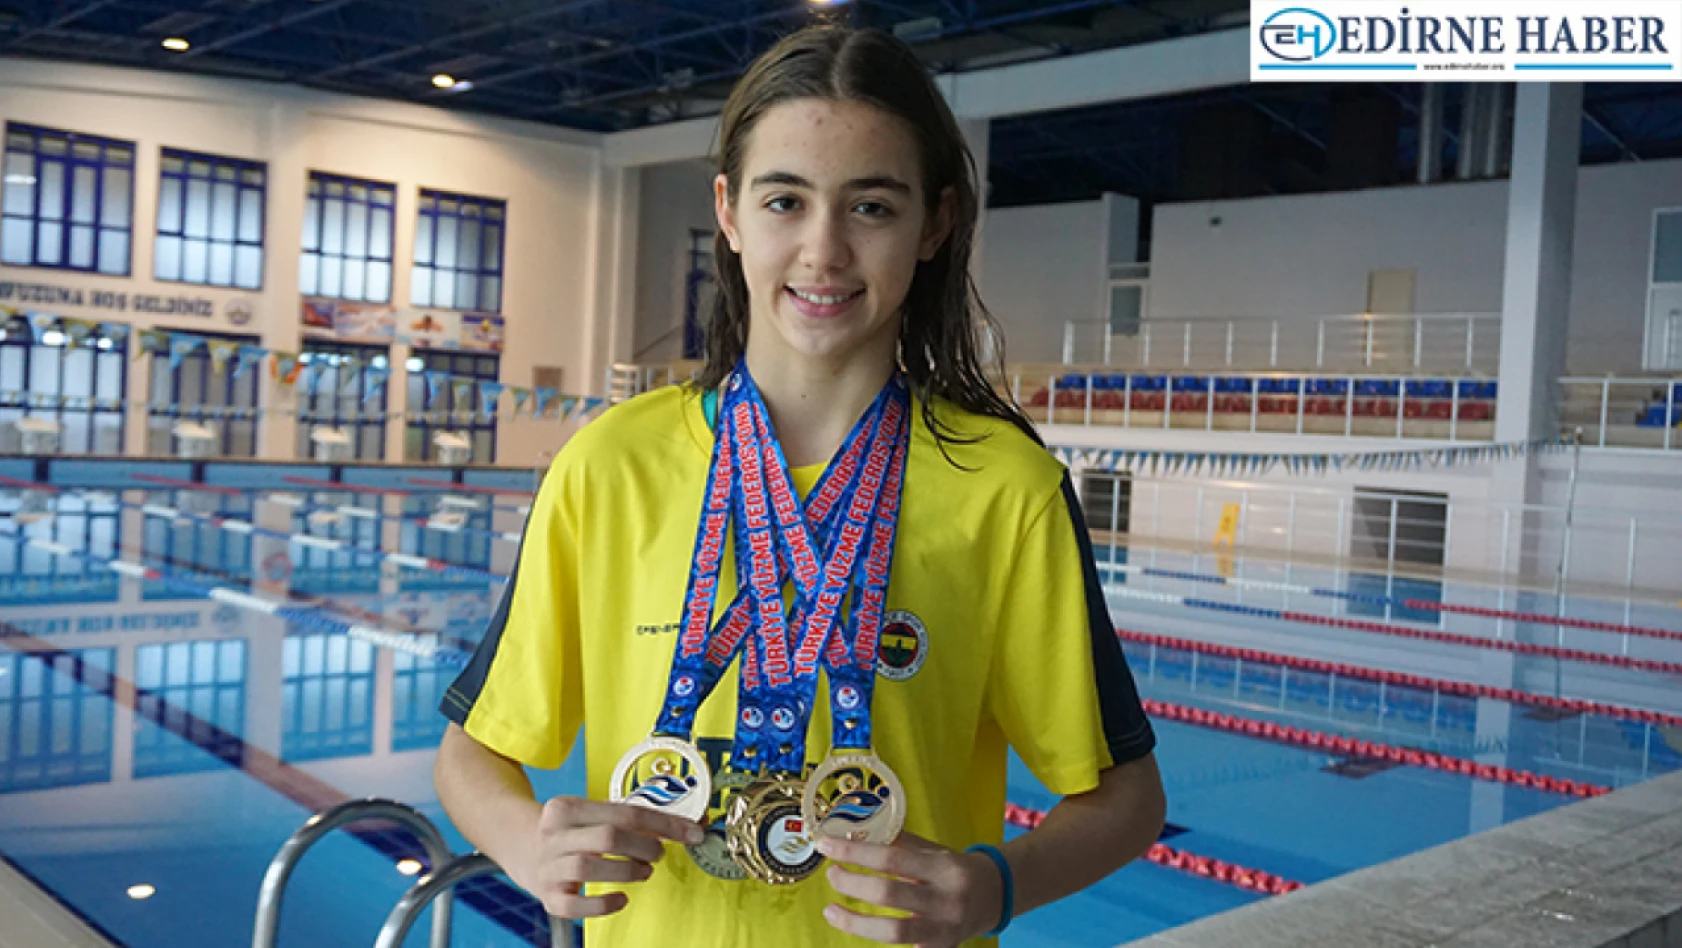 Edirneli Yüzücü Fenerbahçe Adına Katıldığı İlk Müsabakada Türkiye Şampiyonu Oldu